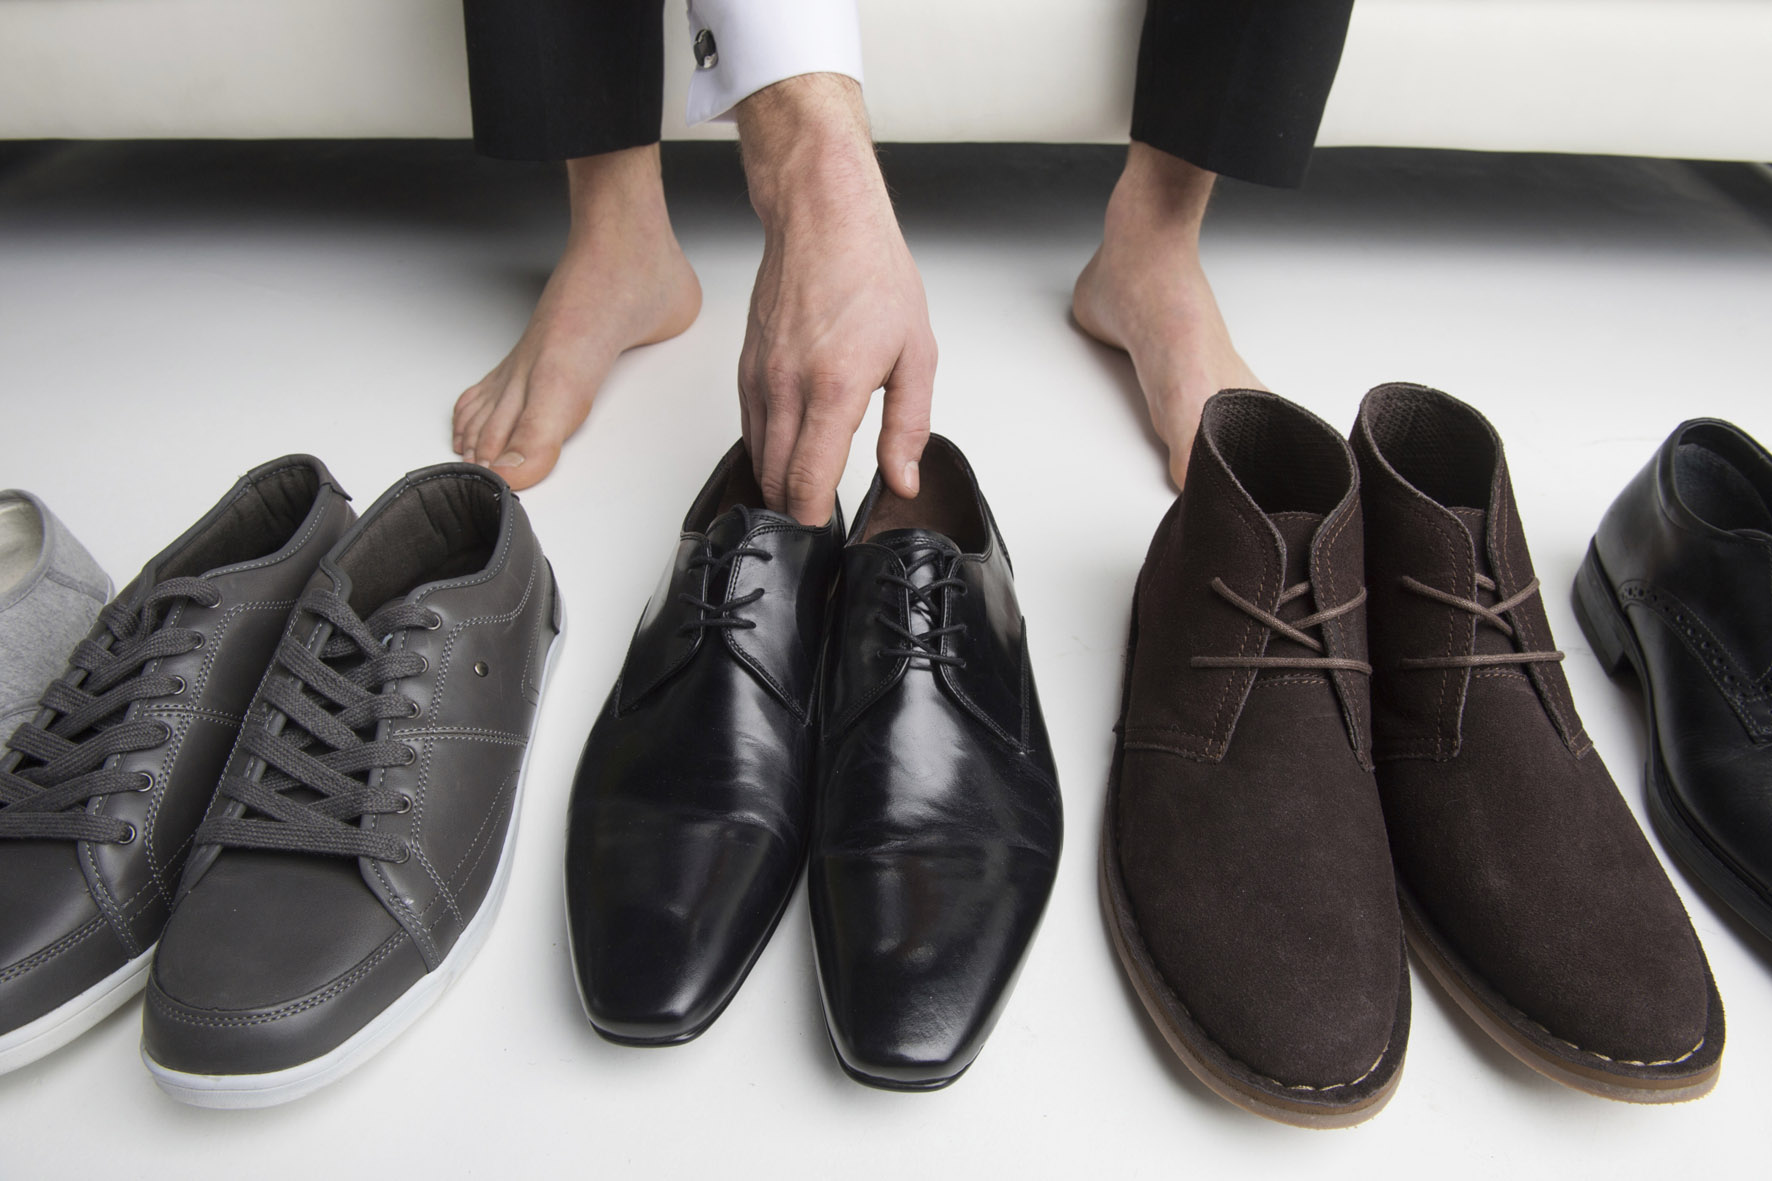 Τα παπούτσια χωρίς κάλτσες αποτελούν κίνδυνο για τους άνδρες – Τι προκαλείται στα πόδια